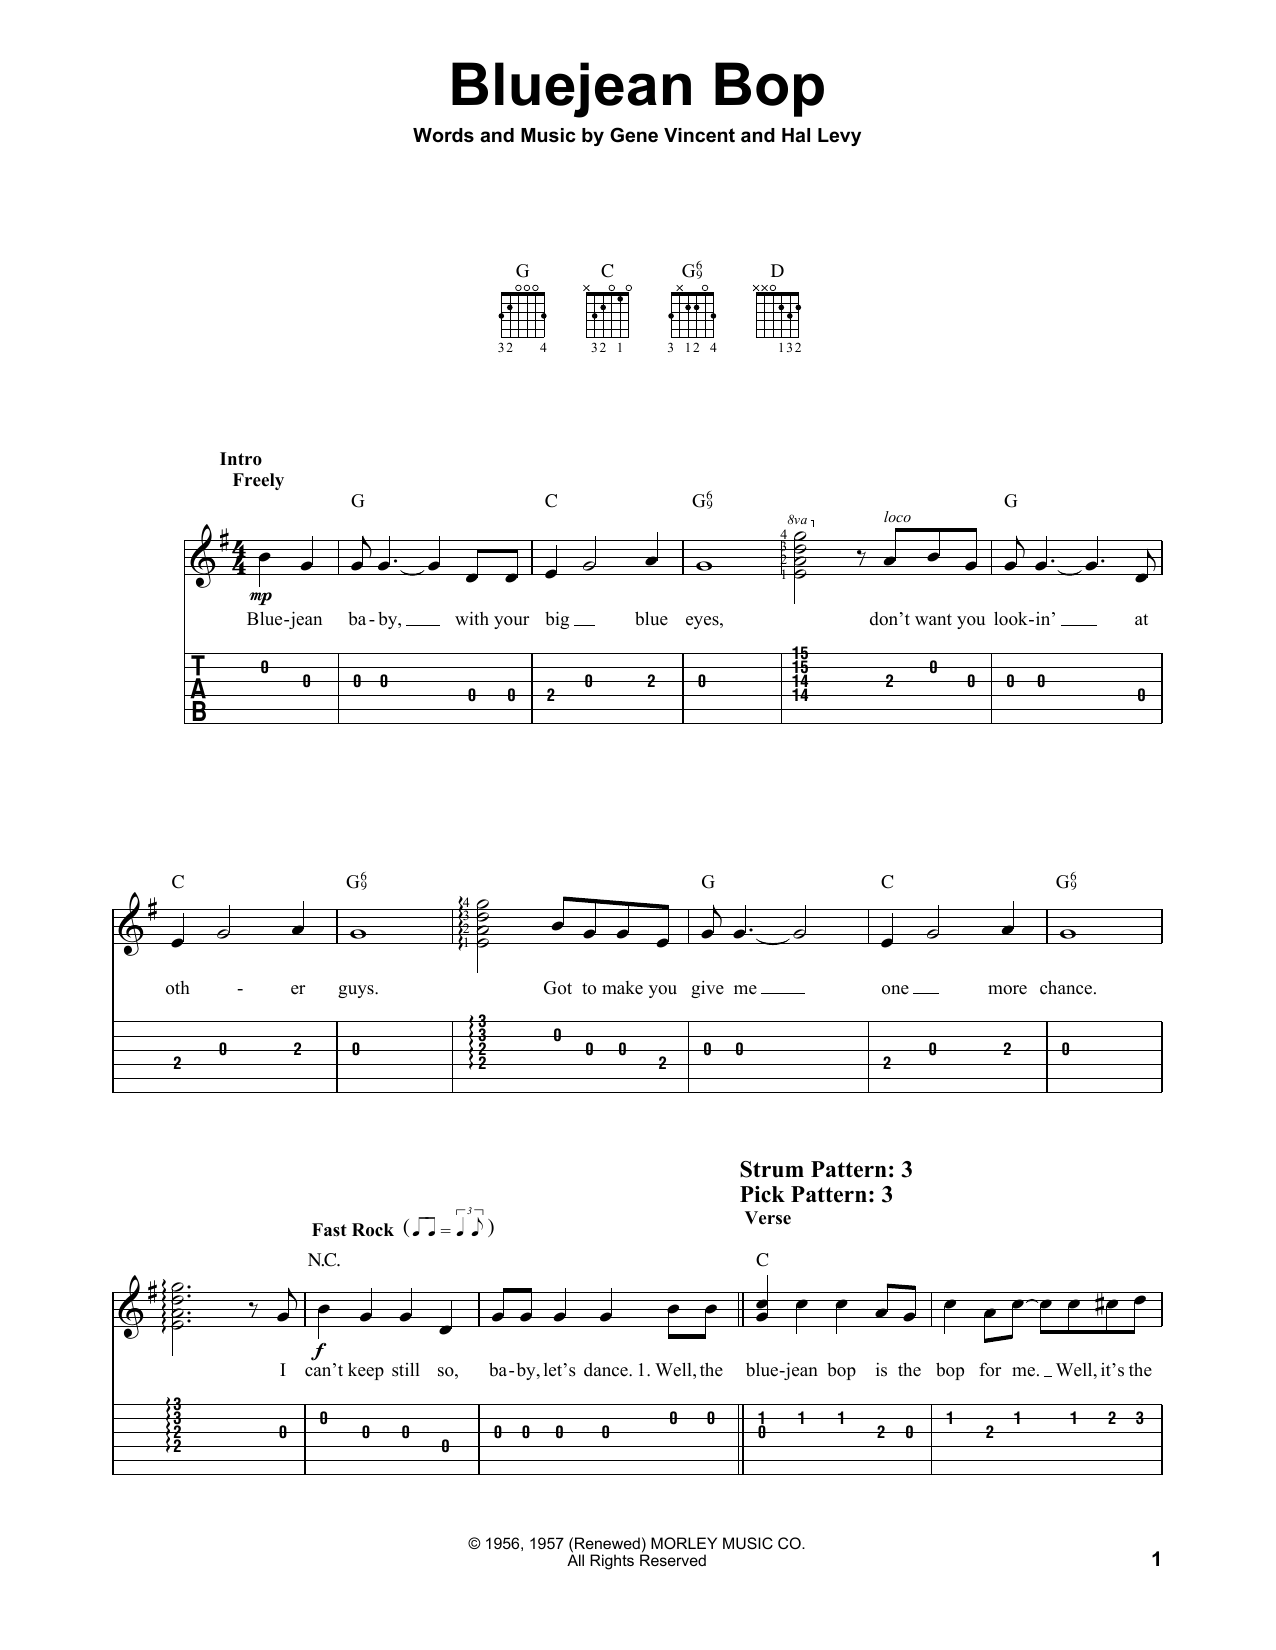 Gene Vincent Bluejean Bop Sheet Music Notes & Chords for Lyrics & Chords - Download or Print PDF